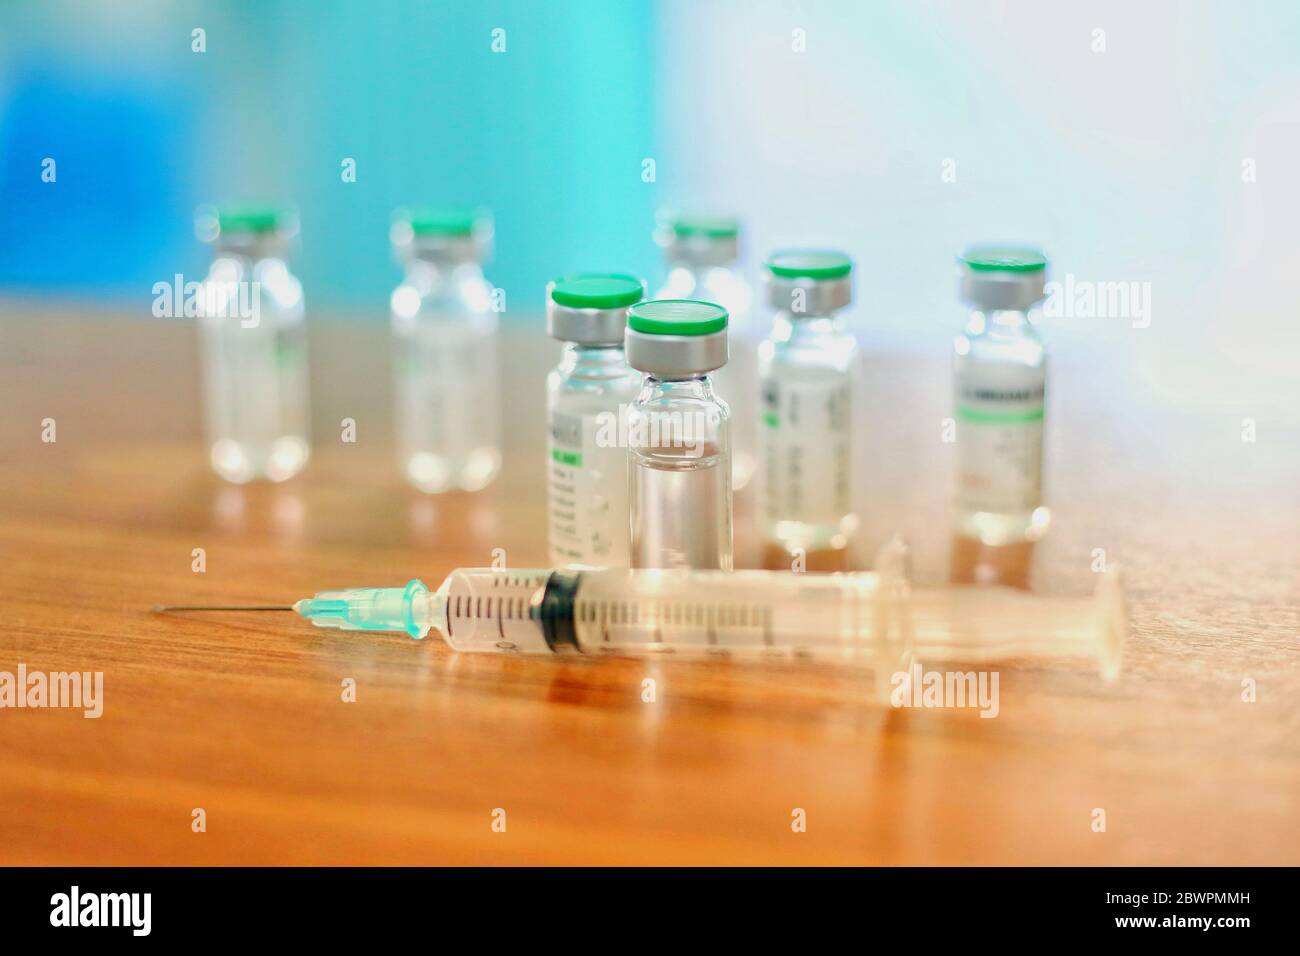 Nuovo vaccino covid-19 dose flaconcino vaccino antinfluenzale shot farmaco siringa ago, concetto test medico vaccino coronavirus ipodermico iniezione trattamento prevenzione delle malattie Foto Stock